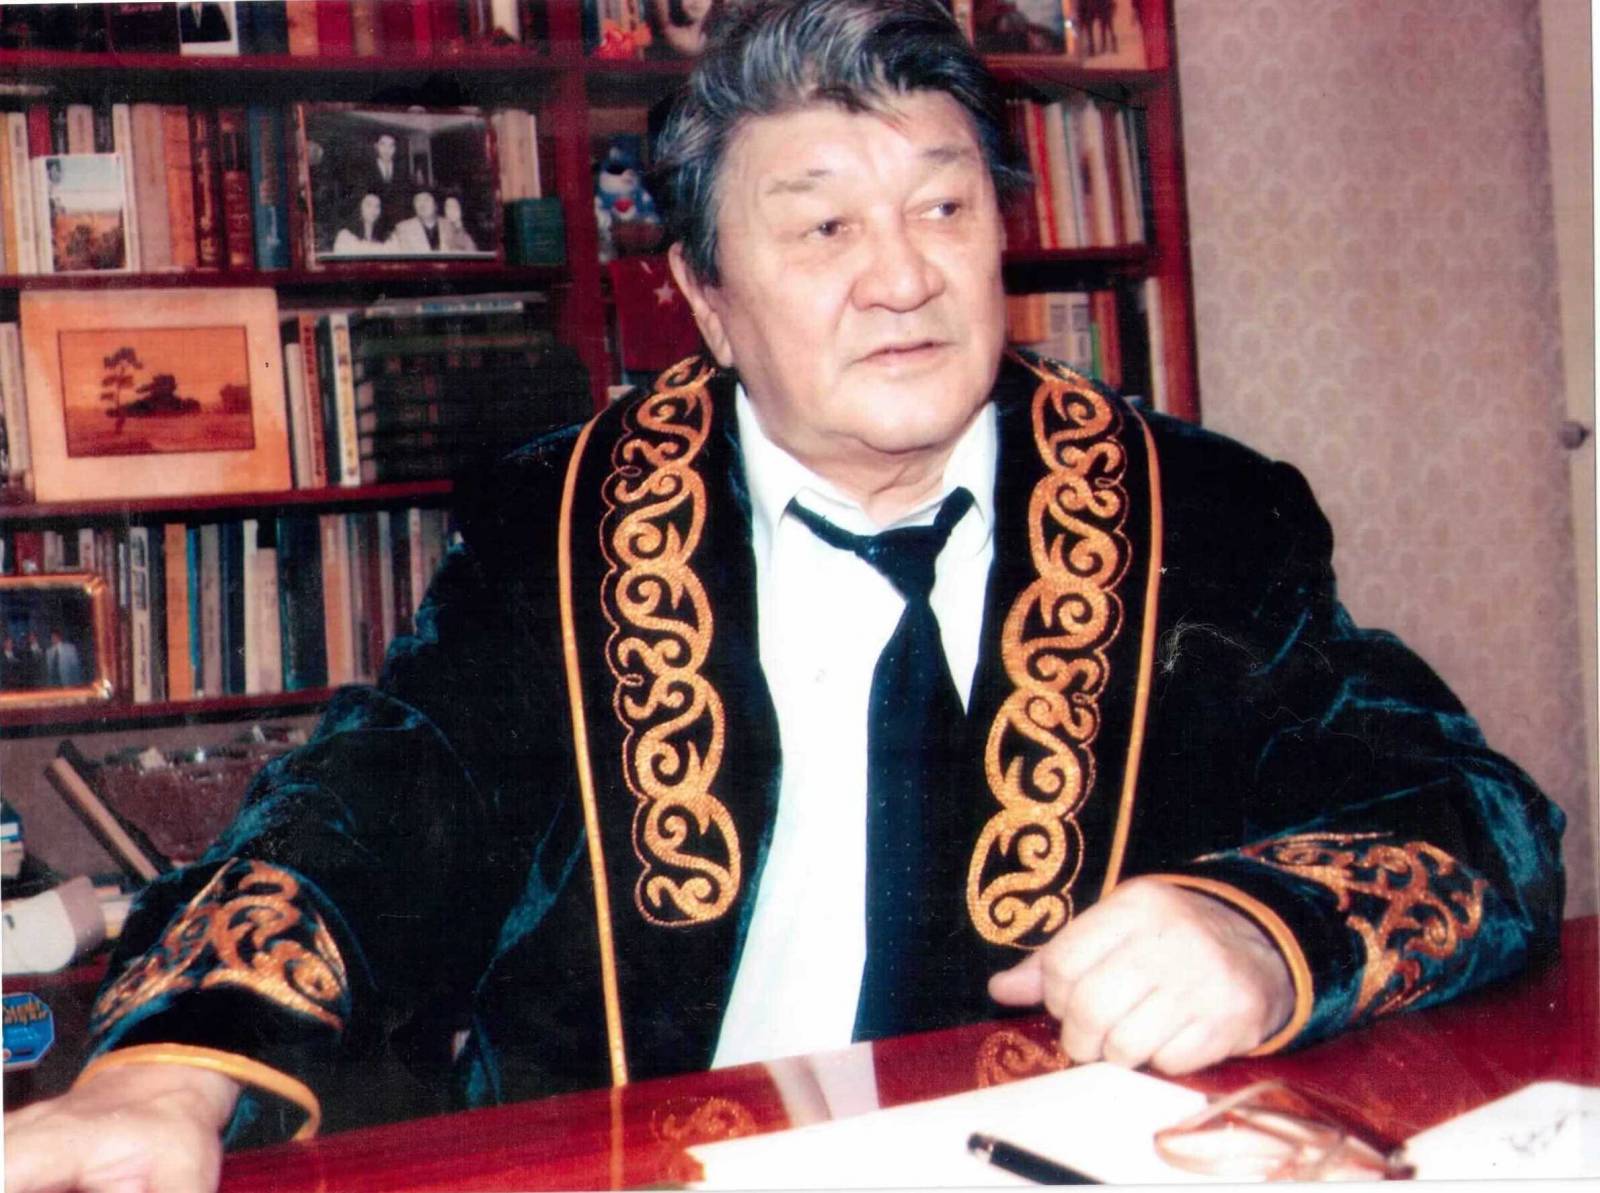 Книга казахстанского писателя поступит в библиотеки британских вузов